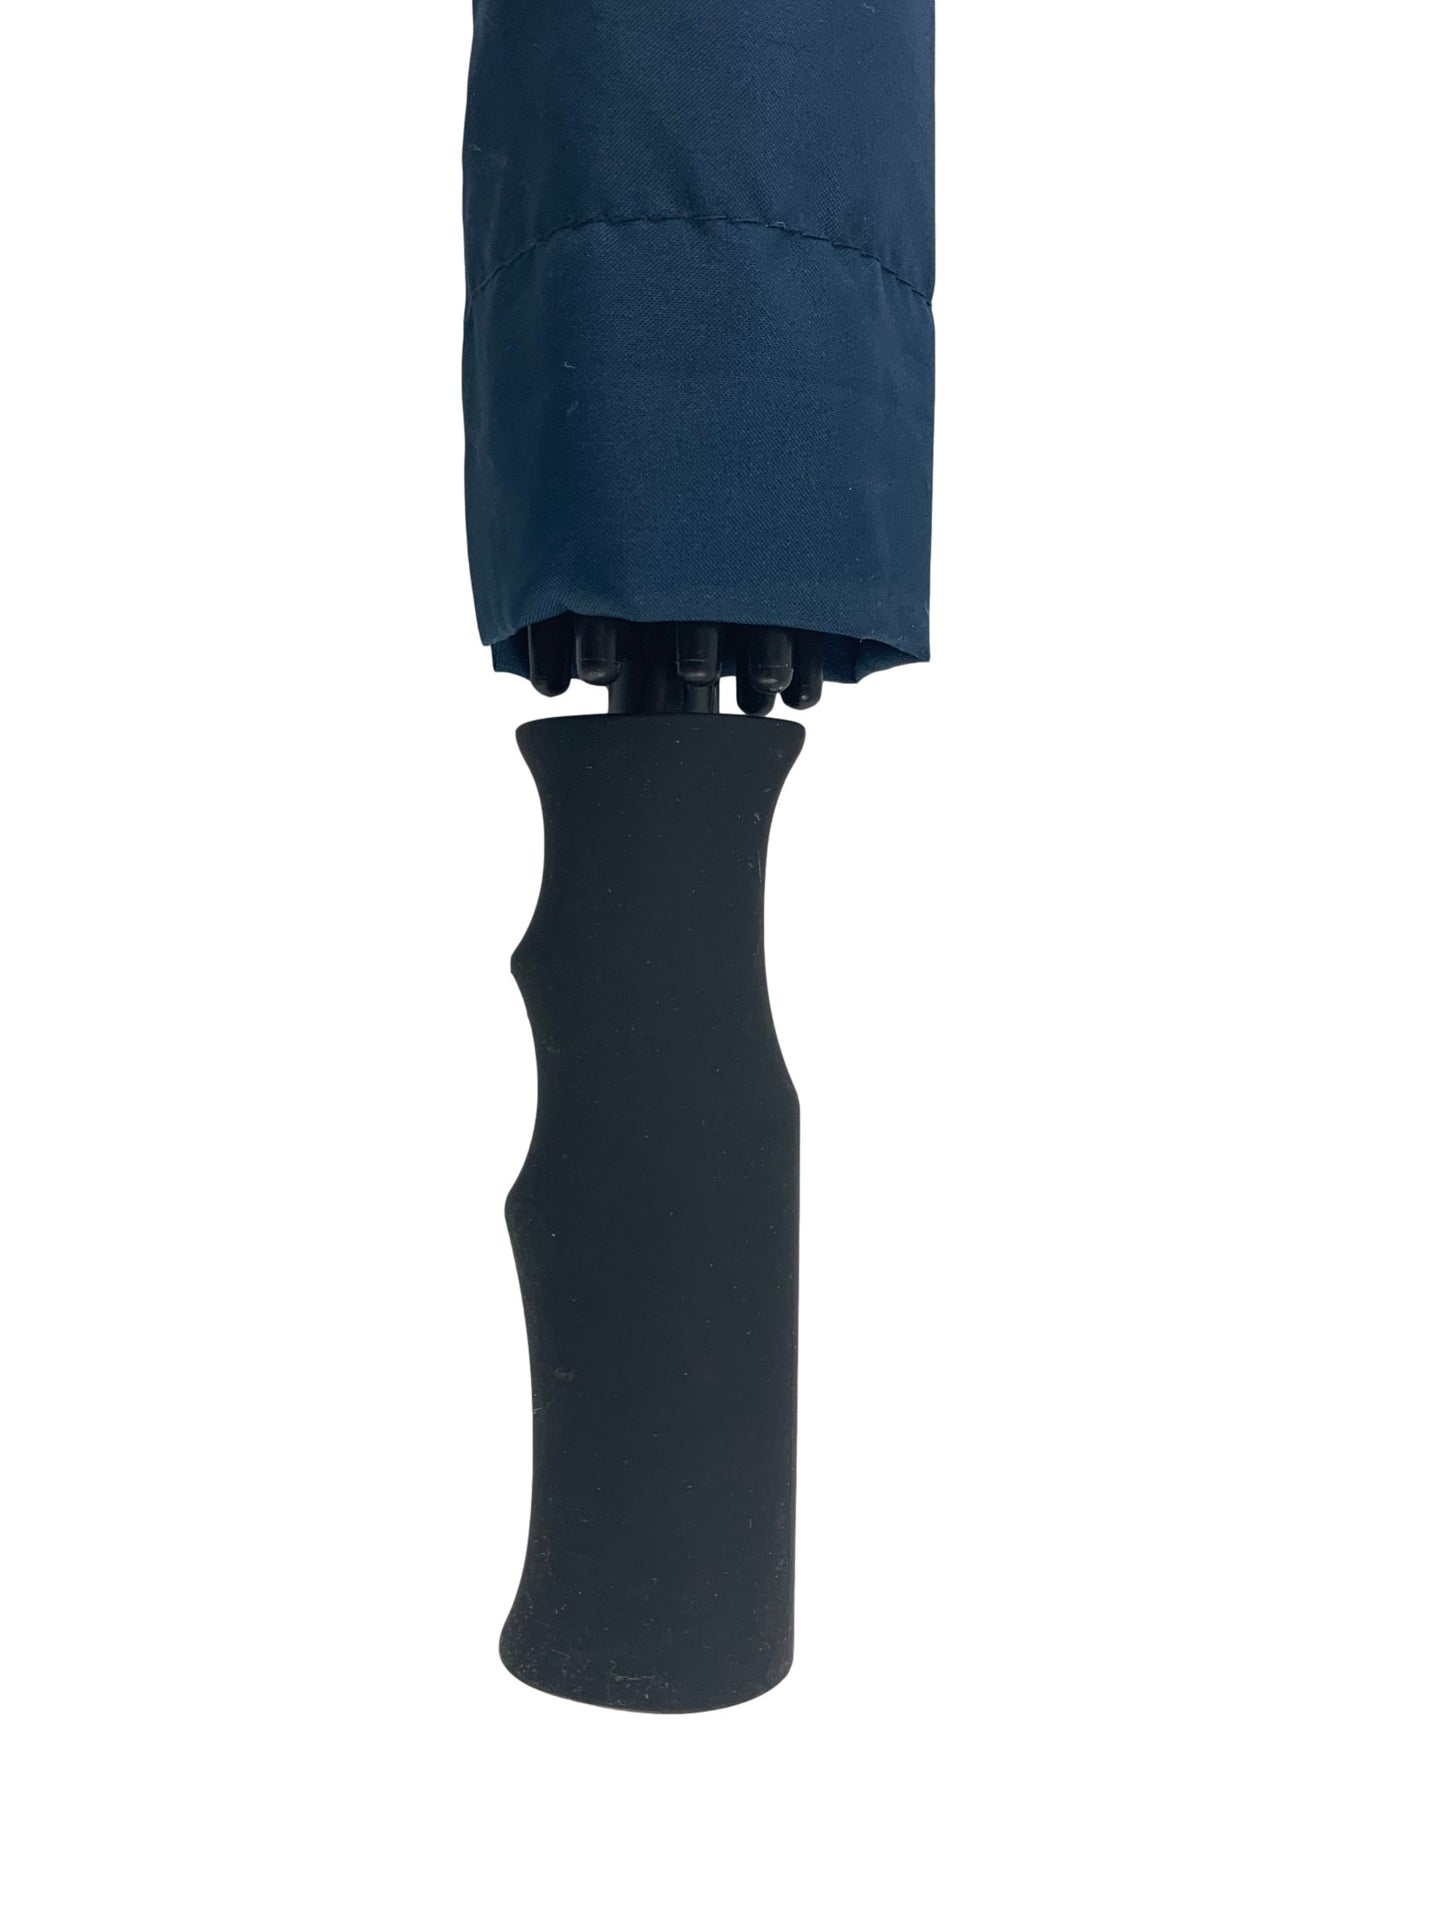 Μπλε Μαρίν (σκούρο), Ομπρέλα ΓΙΓΑΣ, με ιστό και ακτίνες από Ανθρακόνημα (κωδικός 01-03-0506).